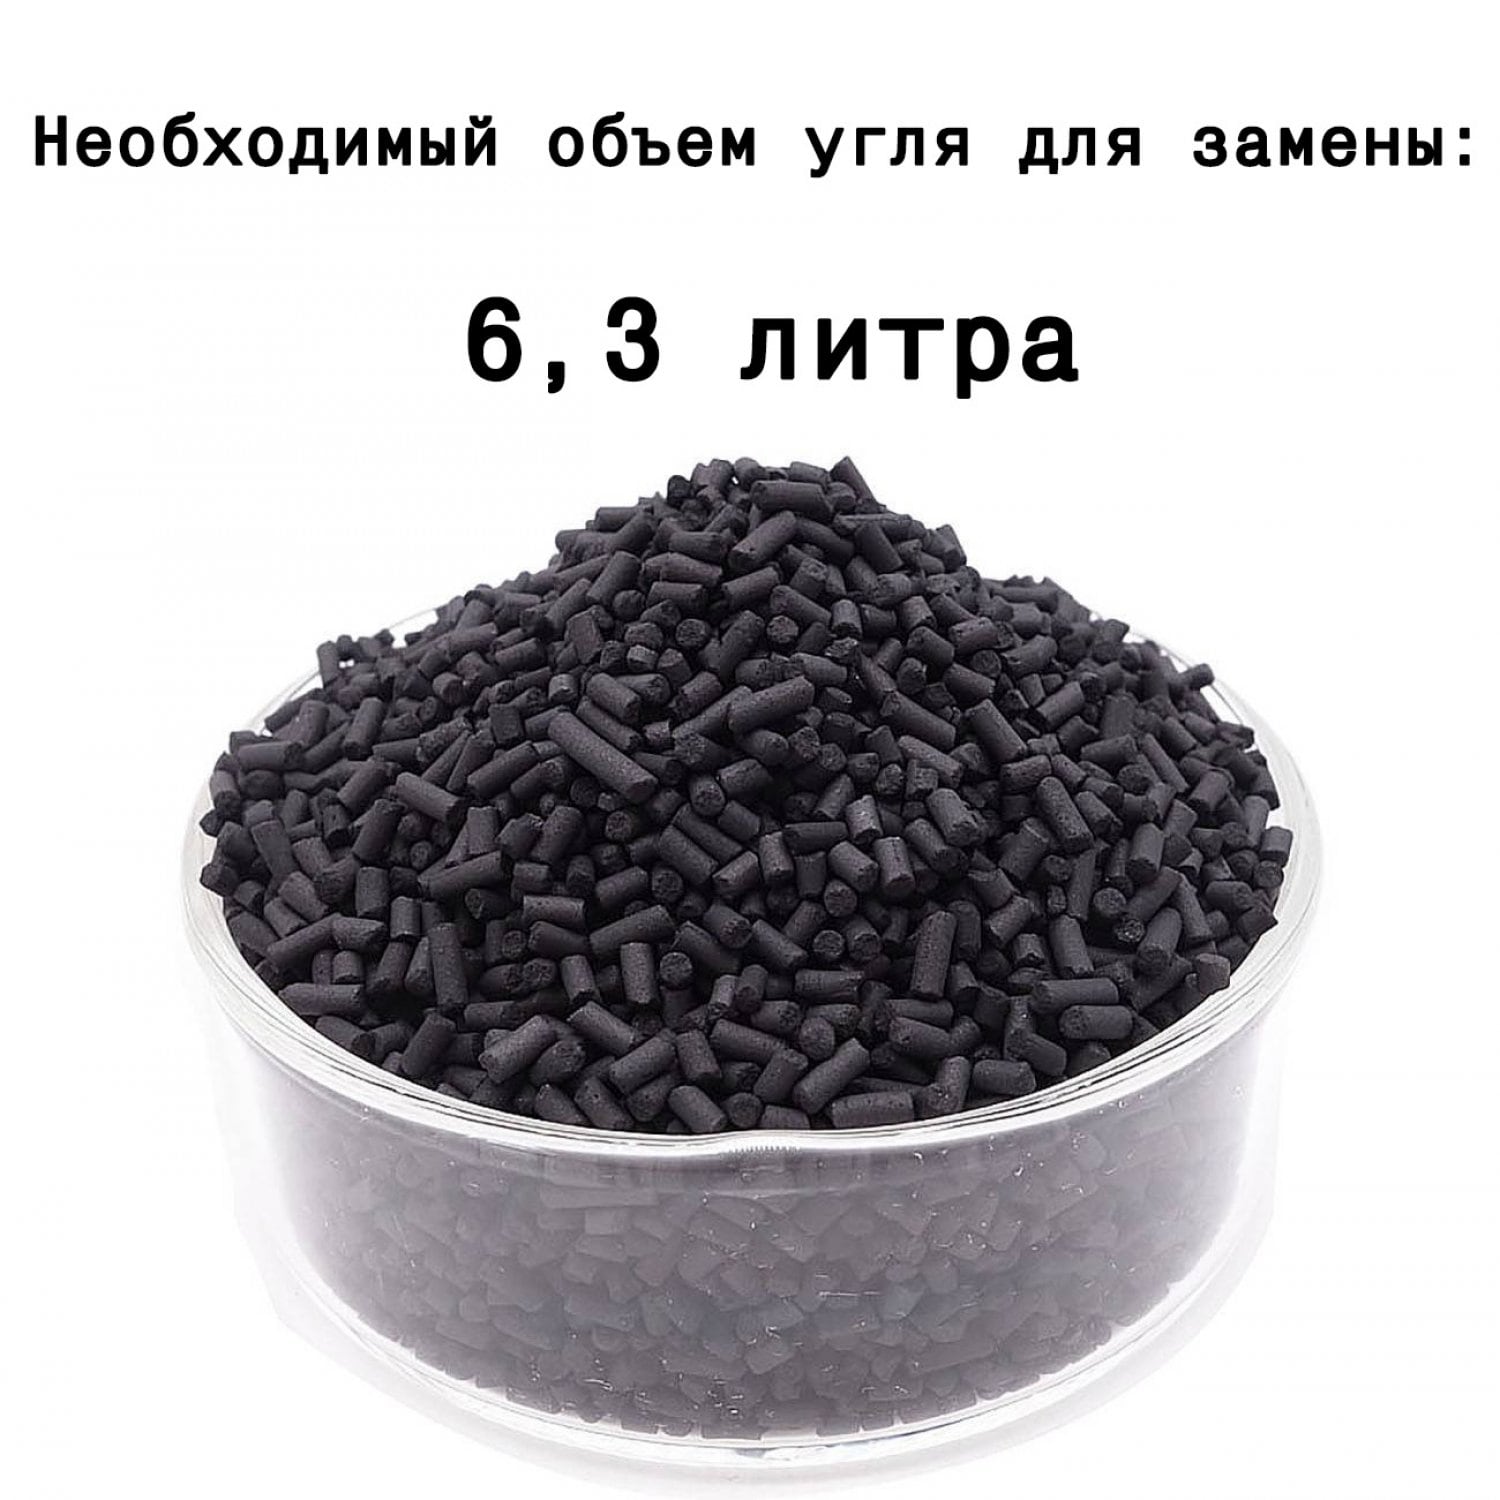 Угольный фильтр MagicAir 350/125